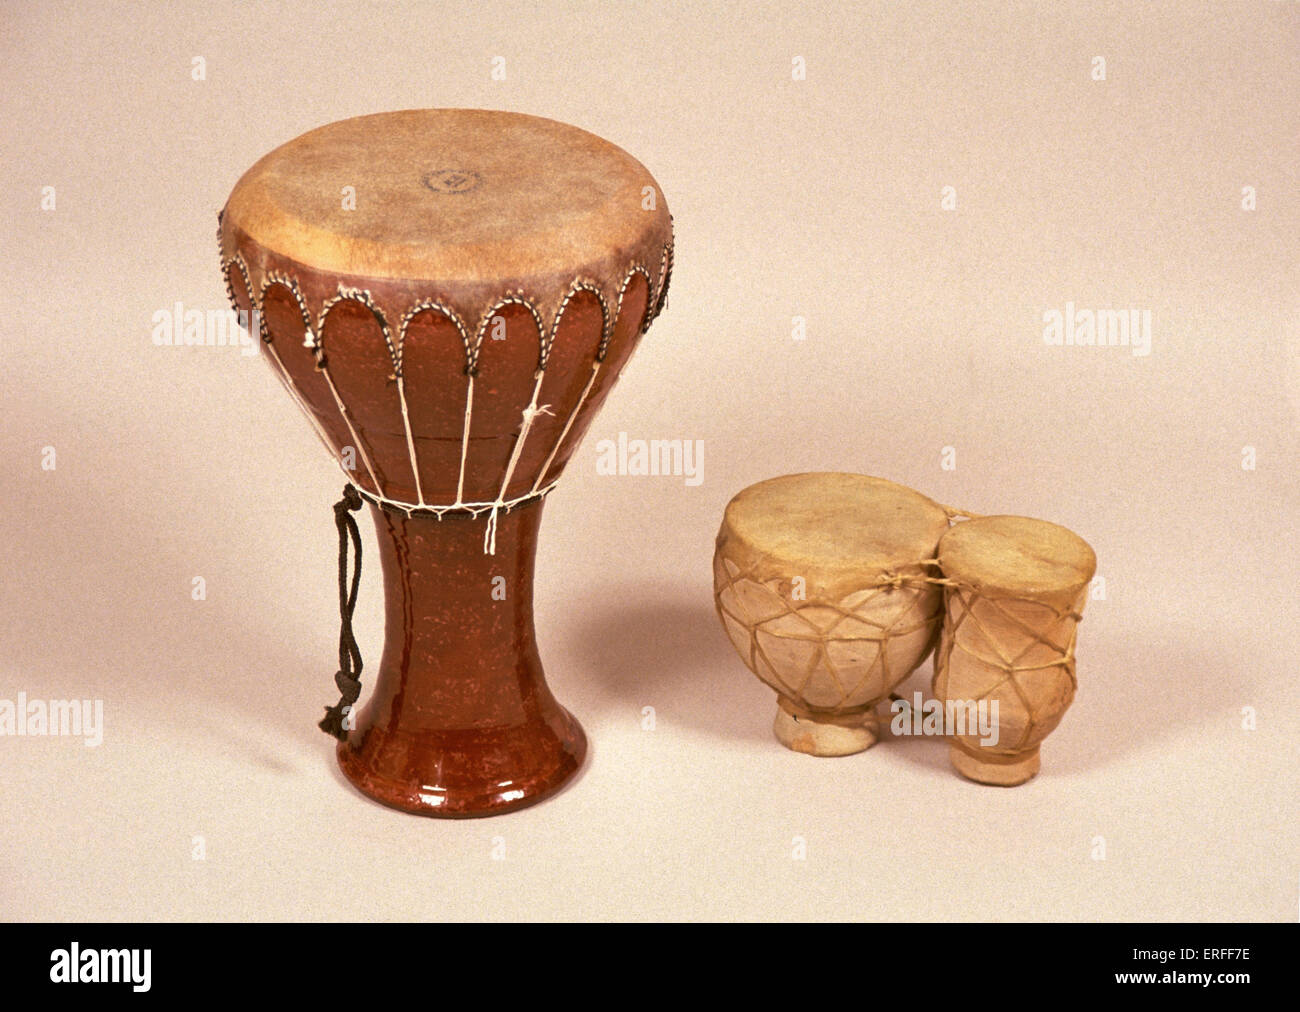 https://c8.alamy.com/comp/ERFF7E/darabuka-and-bongo-drums-tunisia-drum-like-instrument-derbouka-ERFF7E.jpg